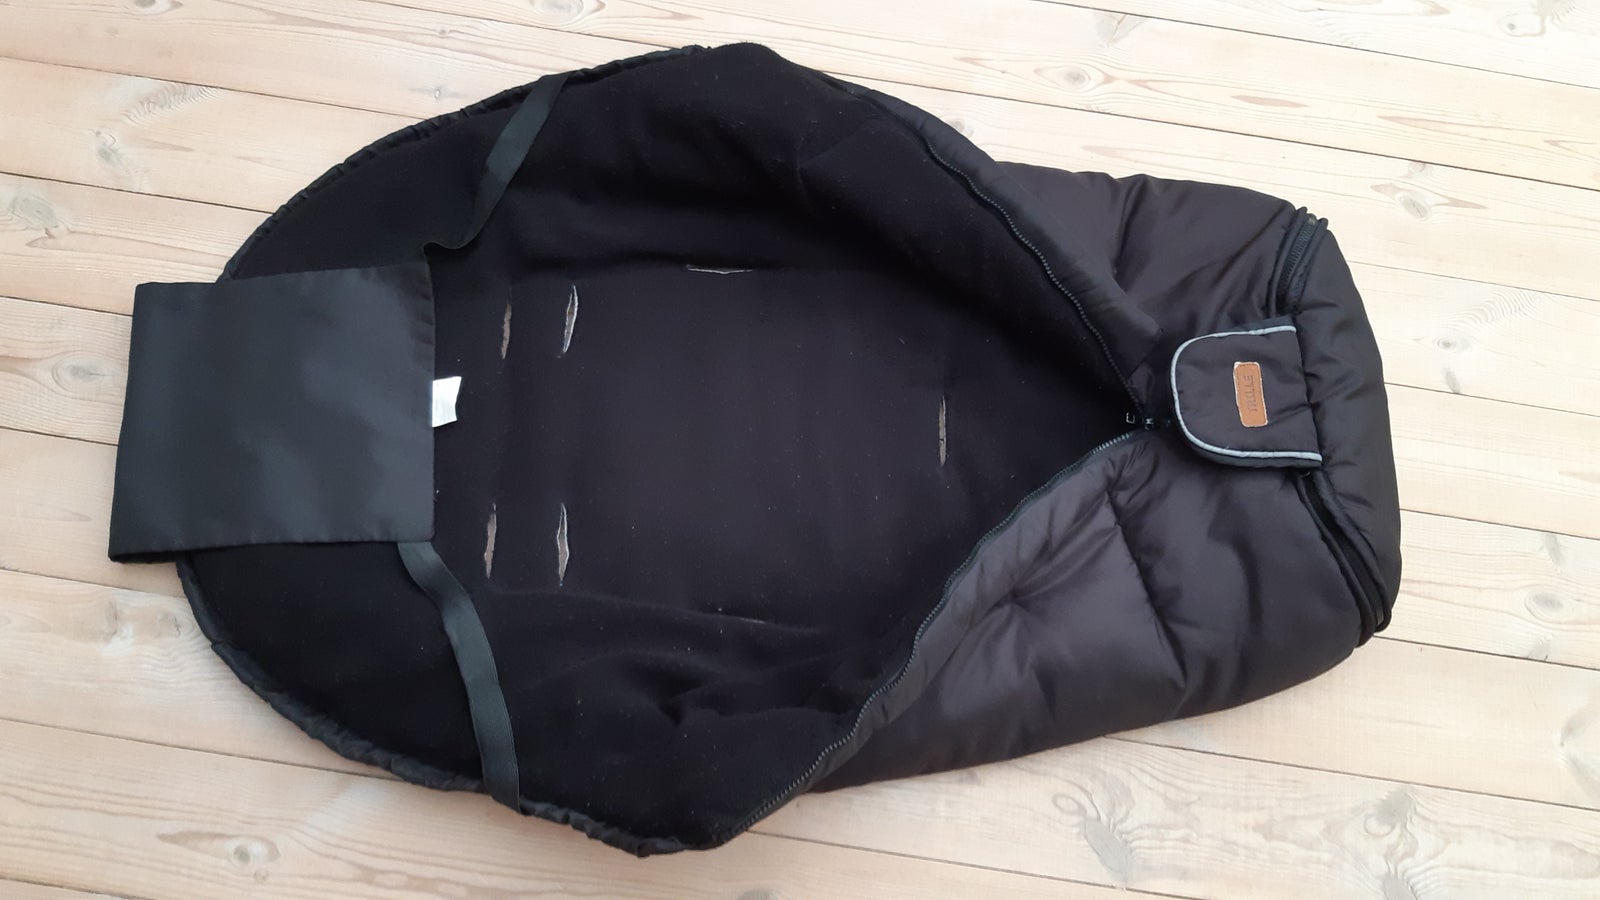 Kørepose, TRILLE, 7 selehuller- varm og tyk